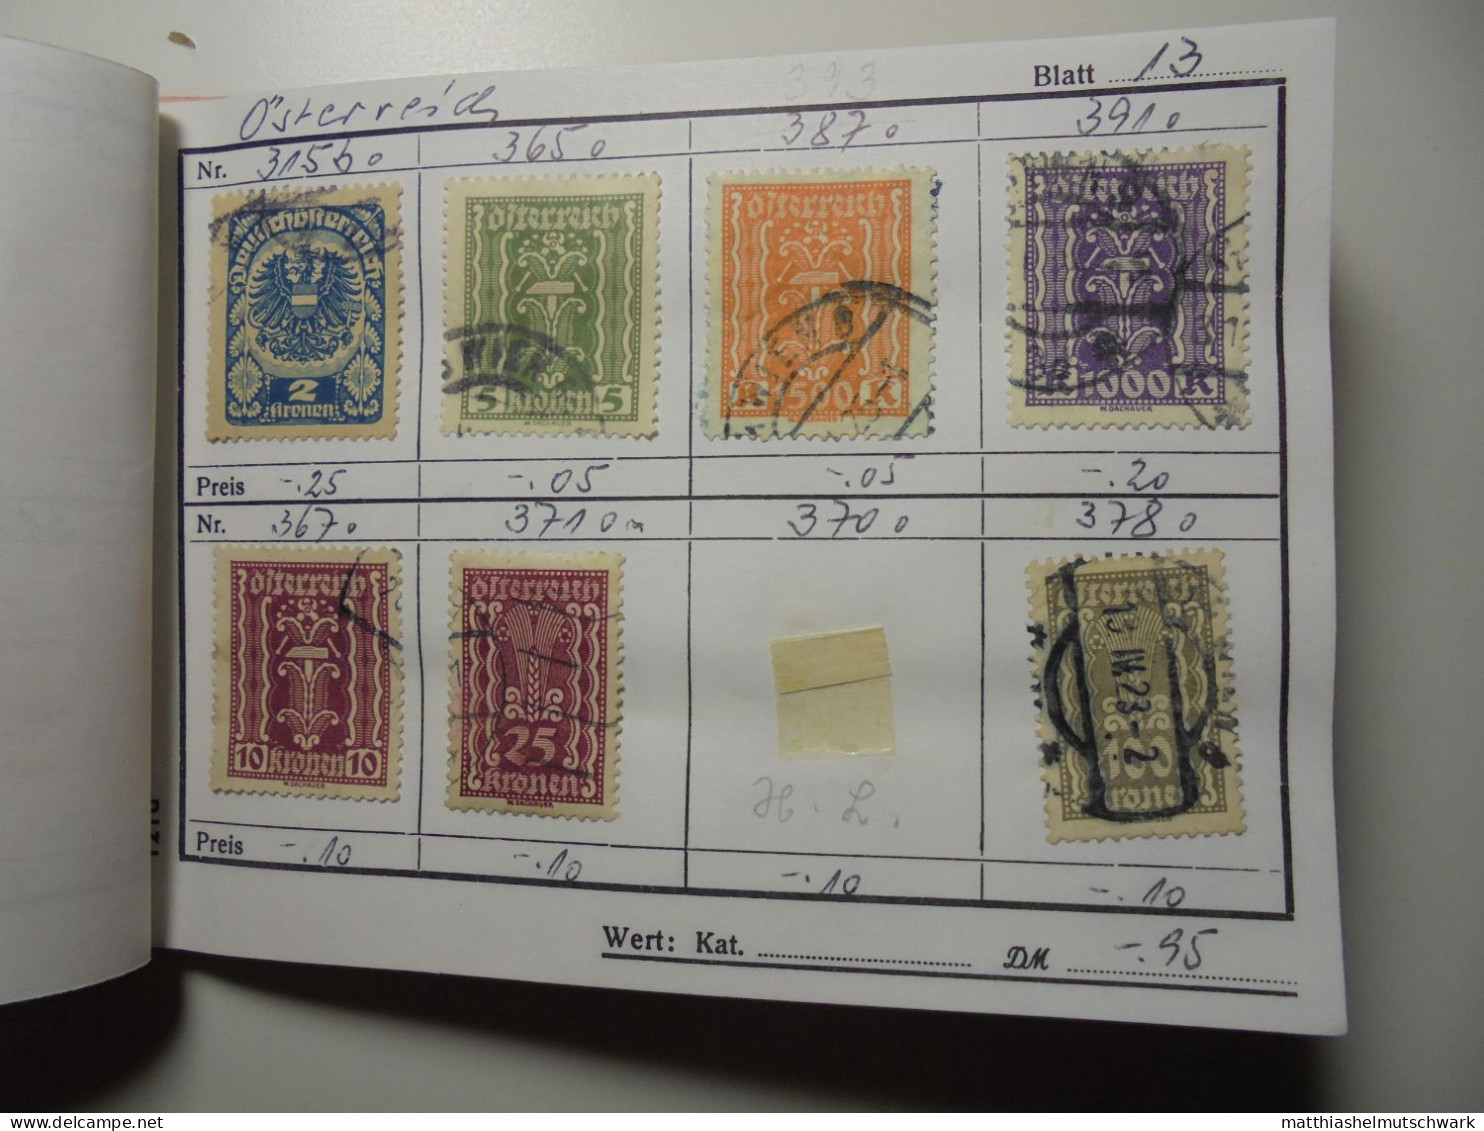 Auswahlheft Nr. 389 20 Blätter 105 Briefmarken  Österreich ca. 1868-1934-1936/Mi Nr. 37 I-575, unvollst